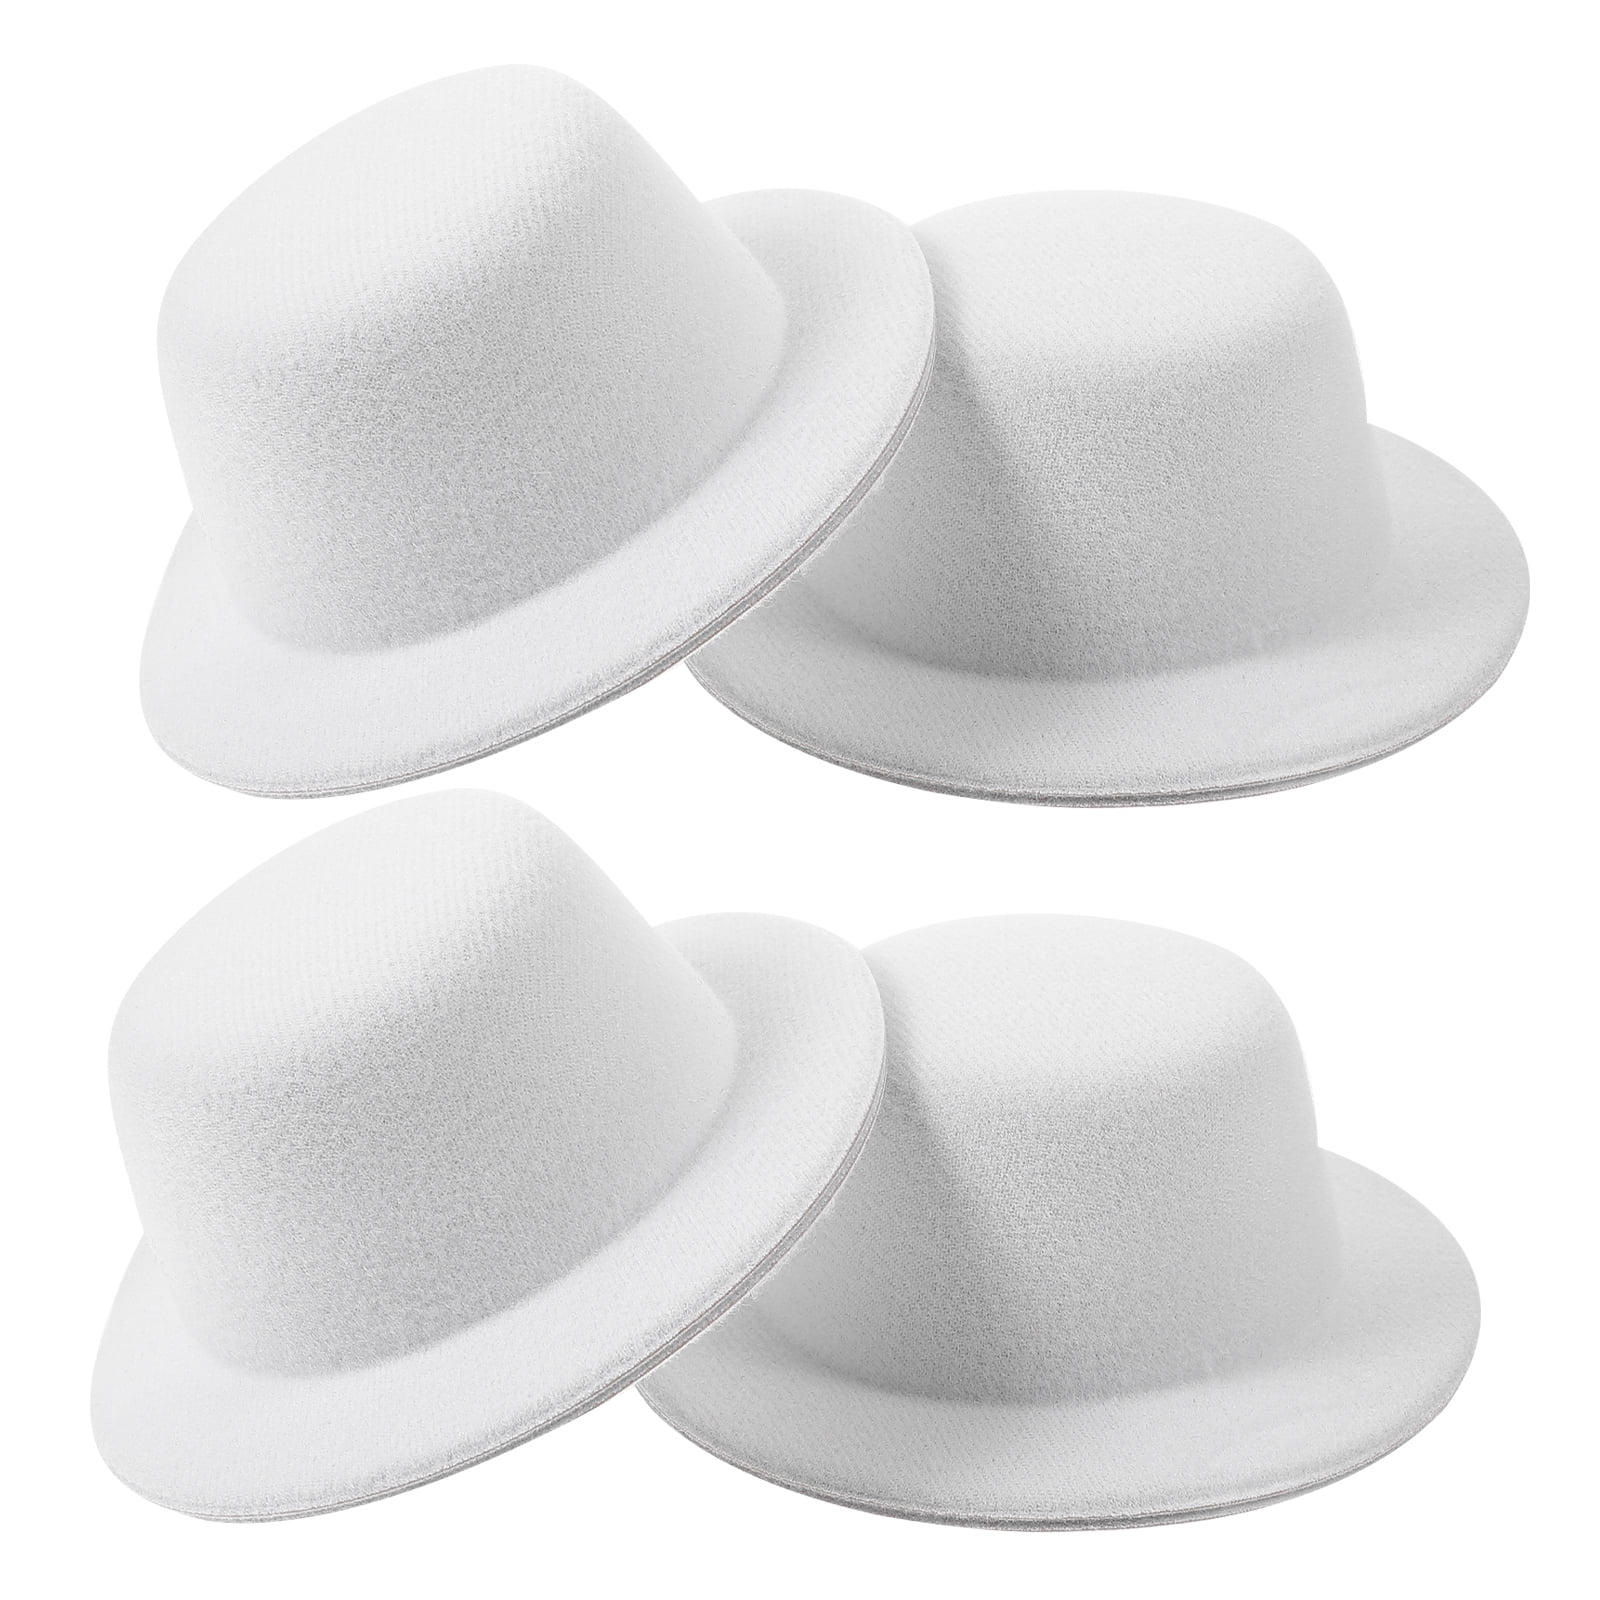 Buy 4pcs Snowman Mini Hats Miniature Hats DIY Crafts Hats